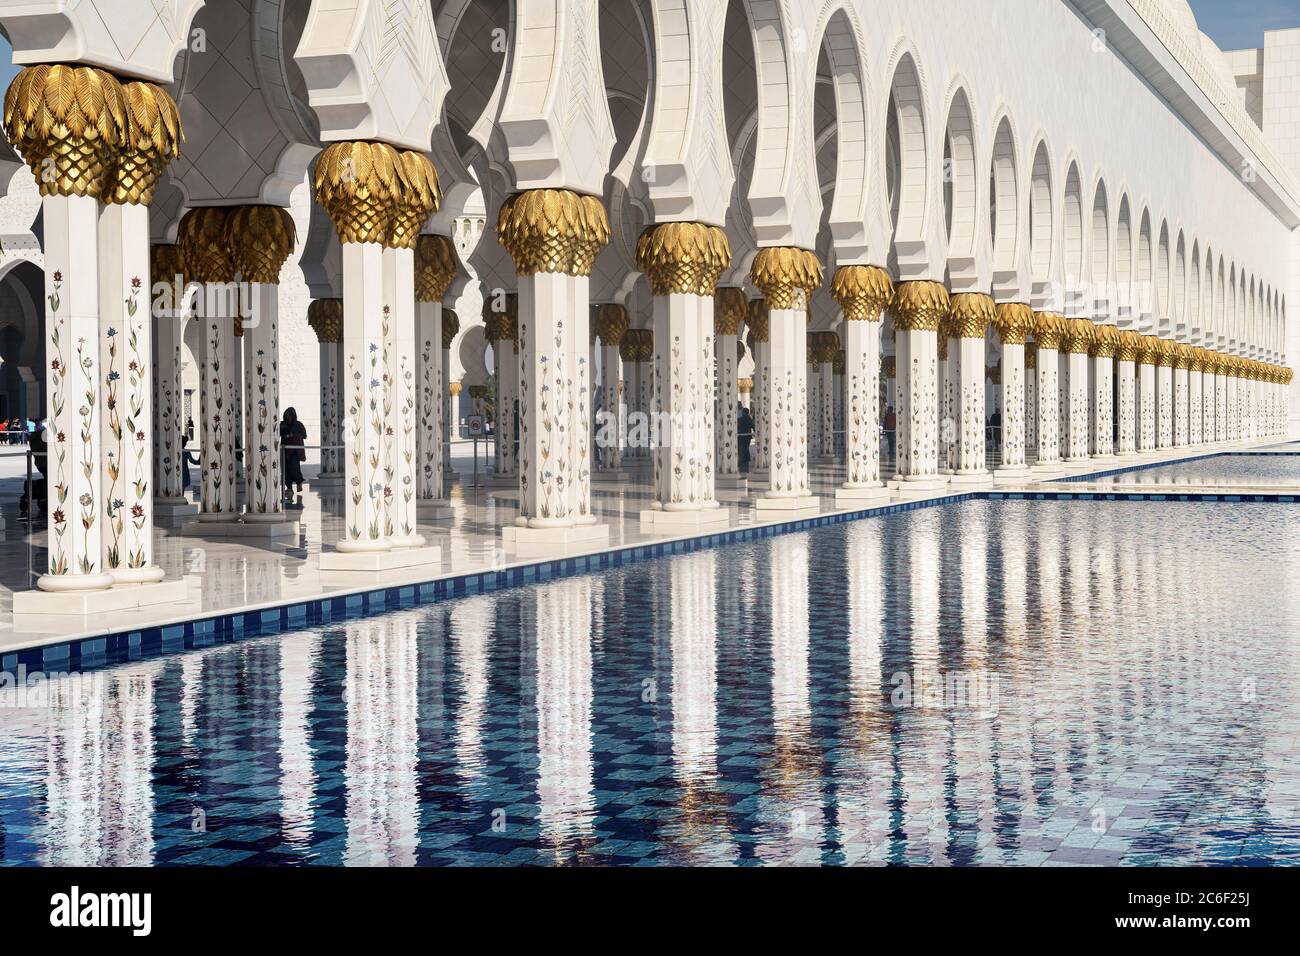 Blick auf die weißen Säulen der Abu Dhabi Moschee, die sich an einem sonnigen Tag im Wasser des Pools spiegeln. Stockfoto